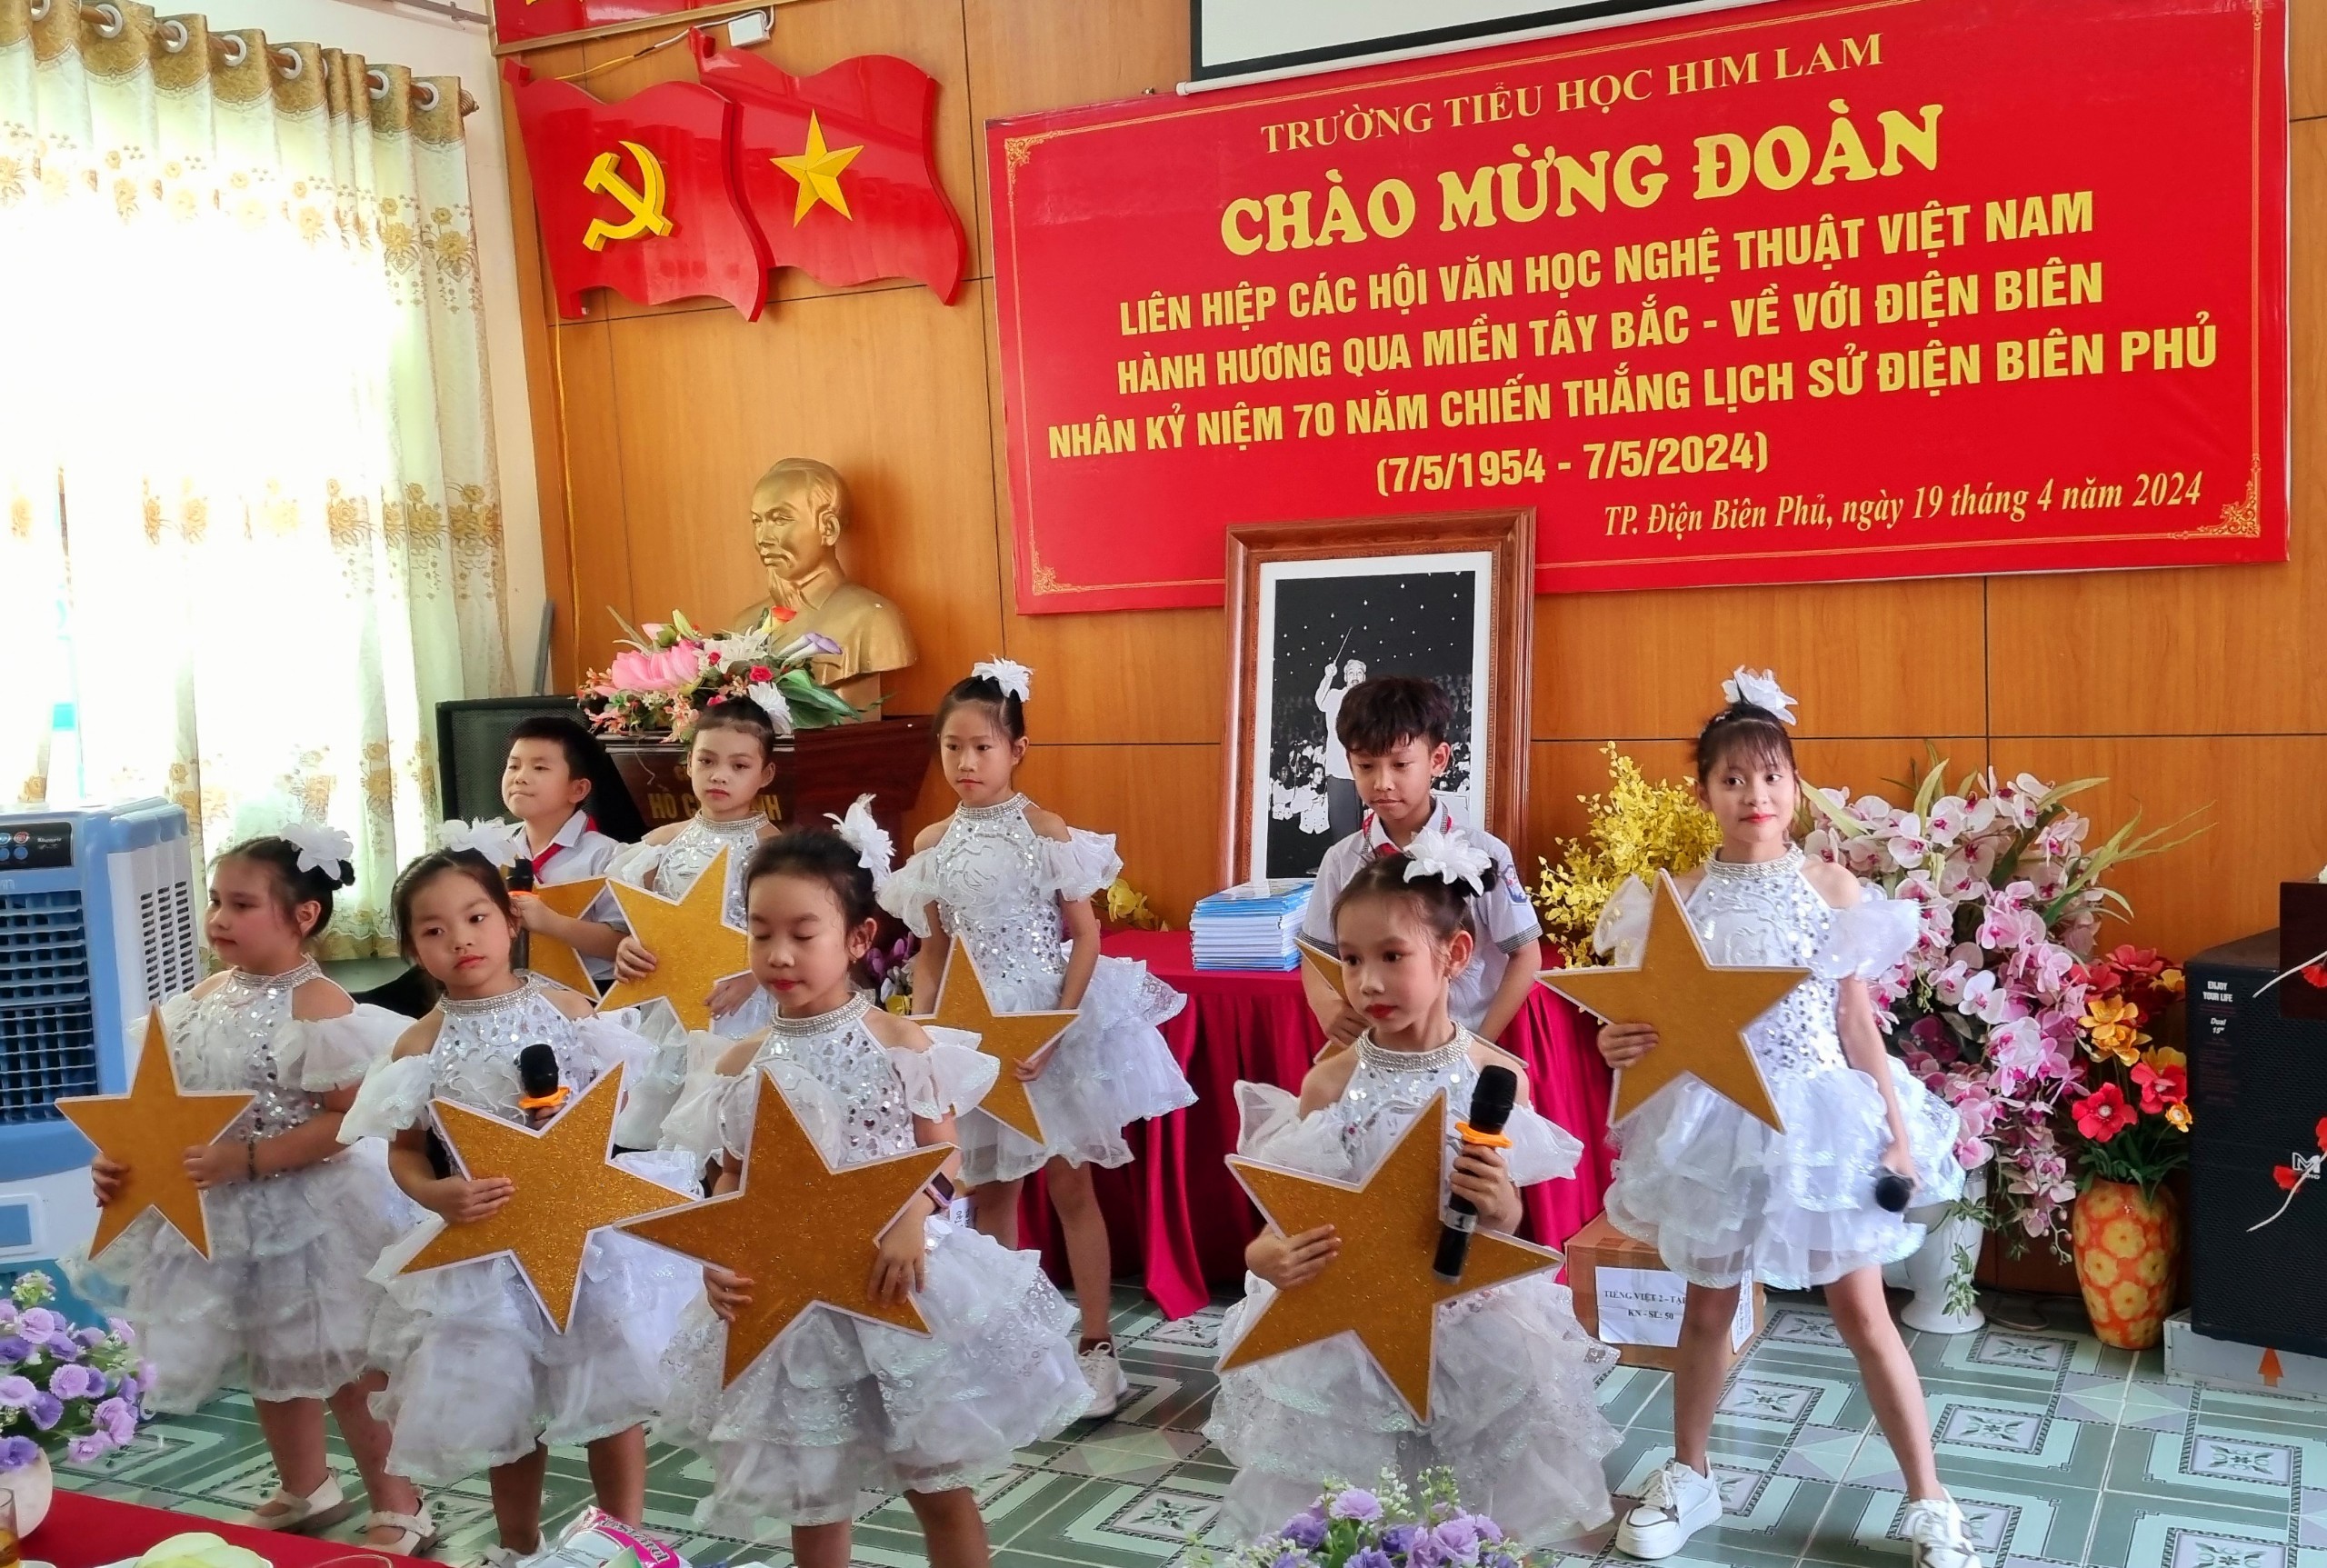 (Ảnh) “Qua miền Tây Bắc - về với Điện Biên”: Thăm và phát động cuộc thi vẽ tranh tại Trường Tiểu học Him Lam - 4